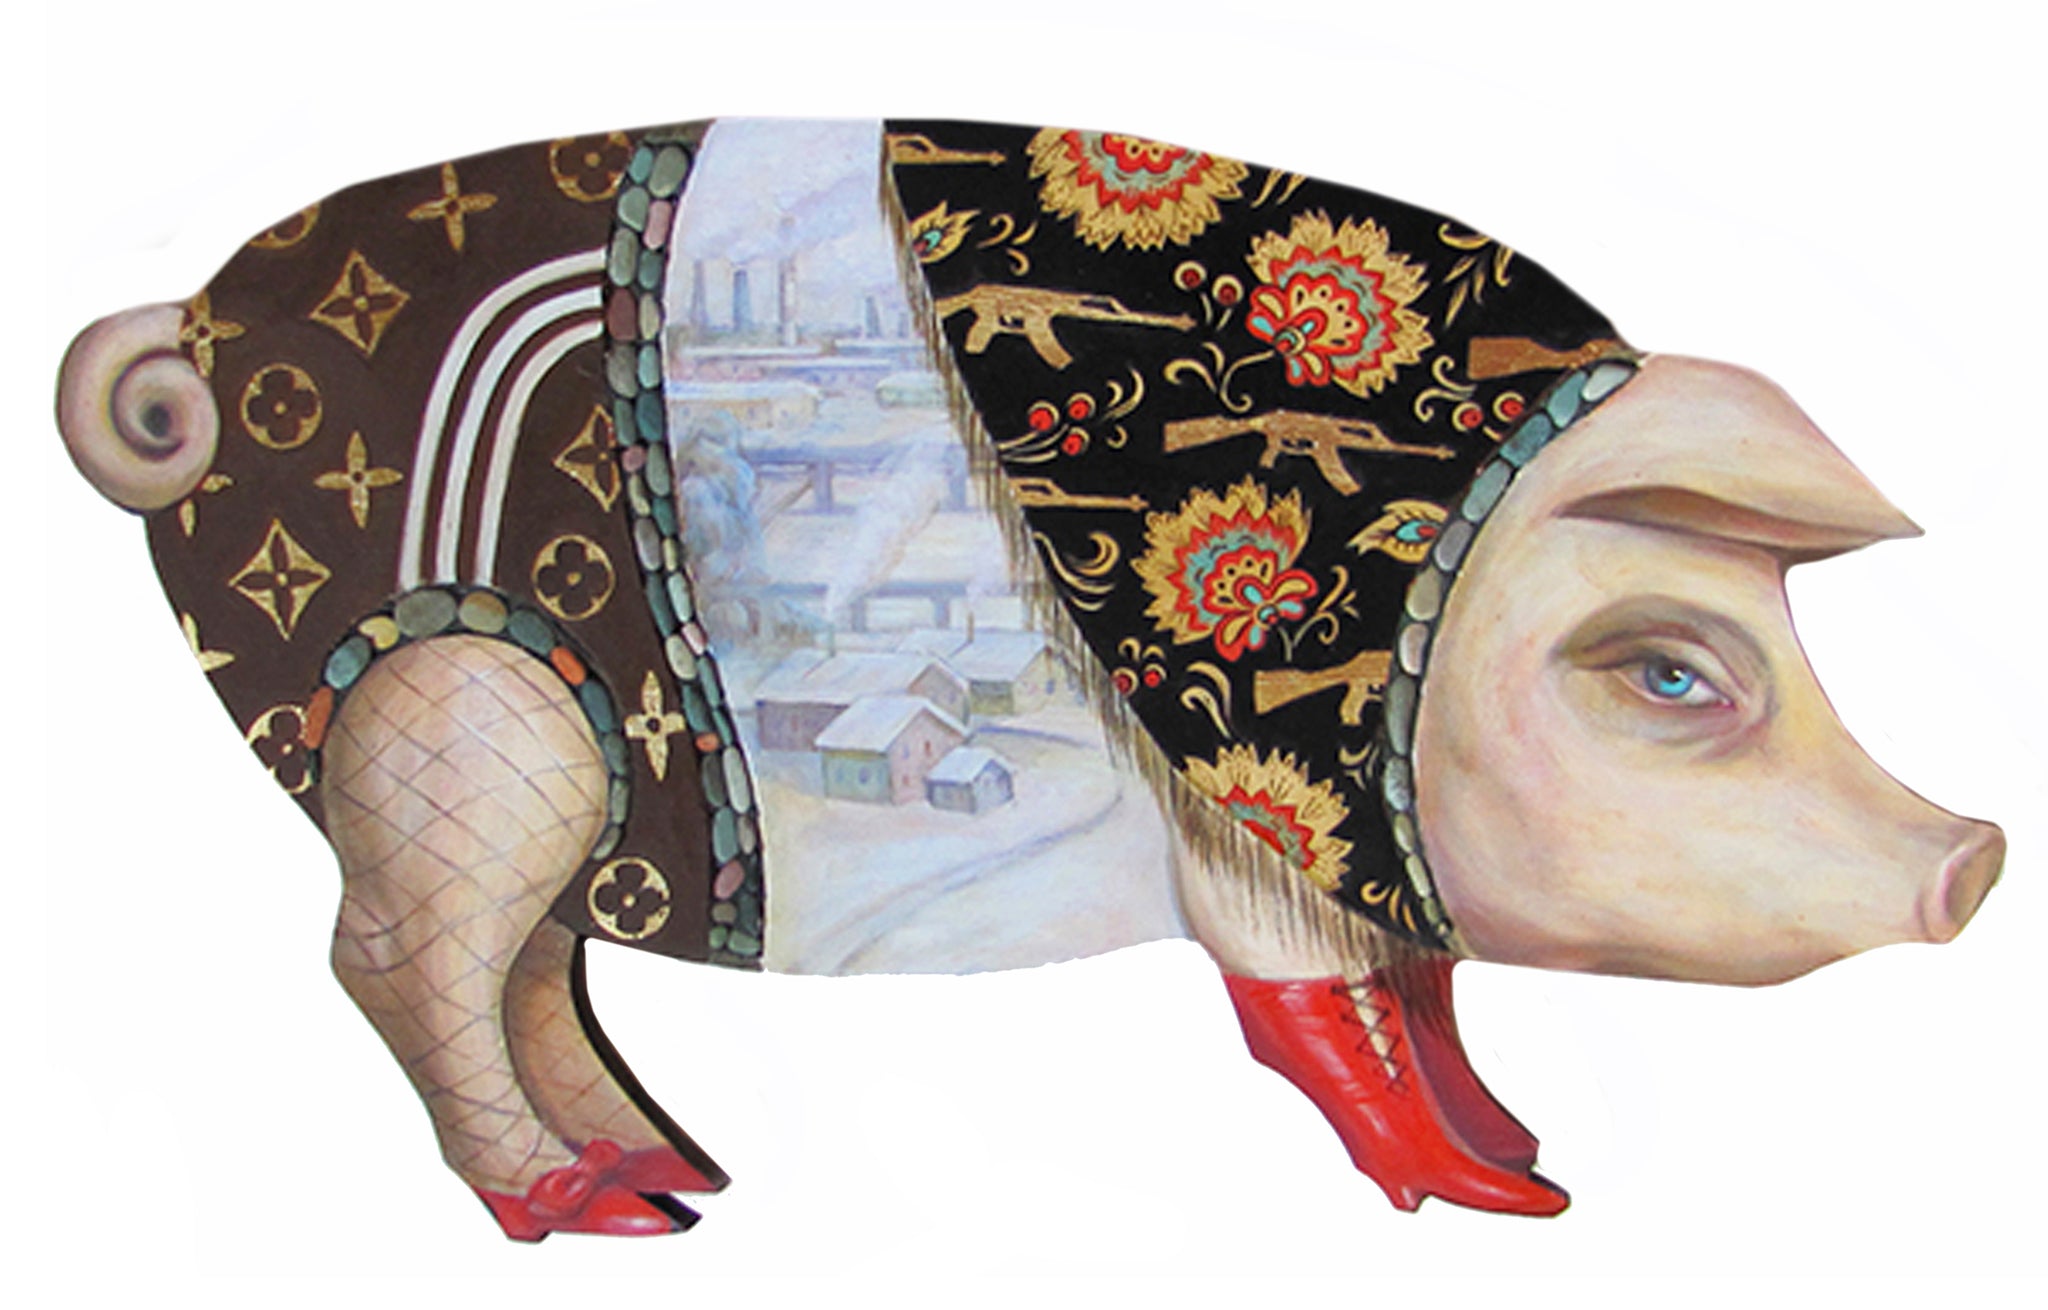 Viktoriya Basina, "Folk Toys: The Pig"